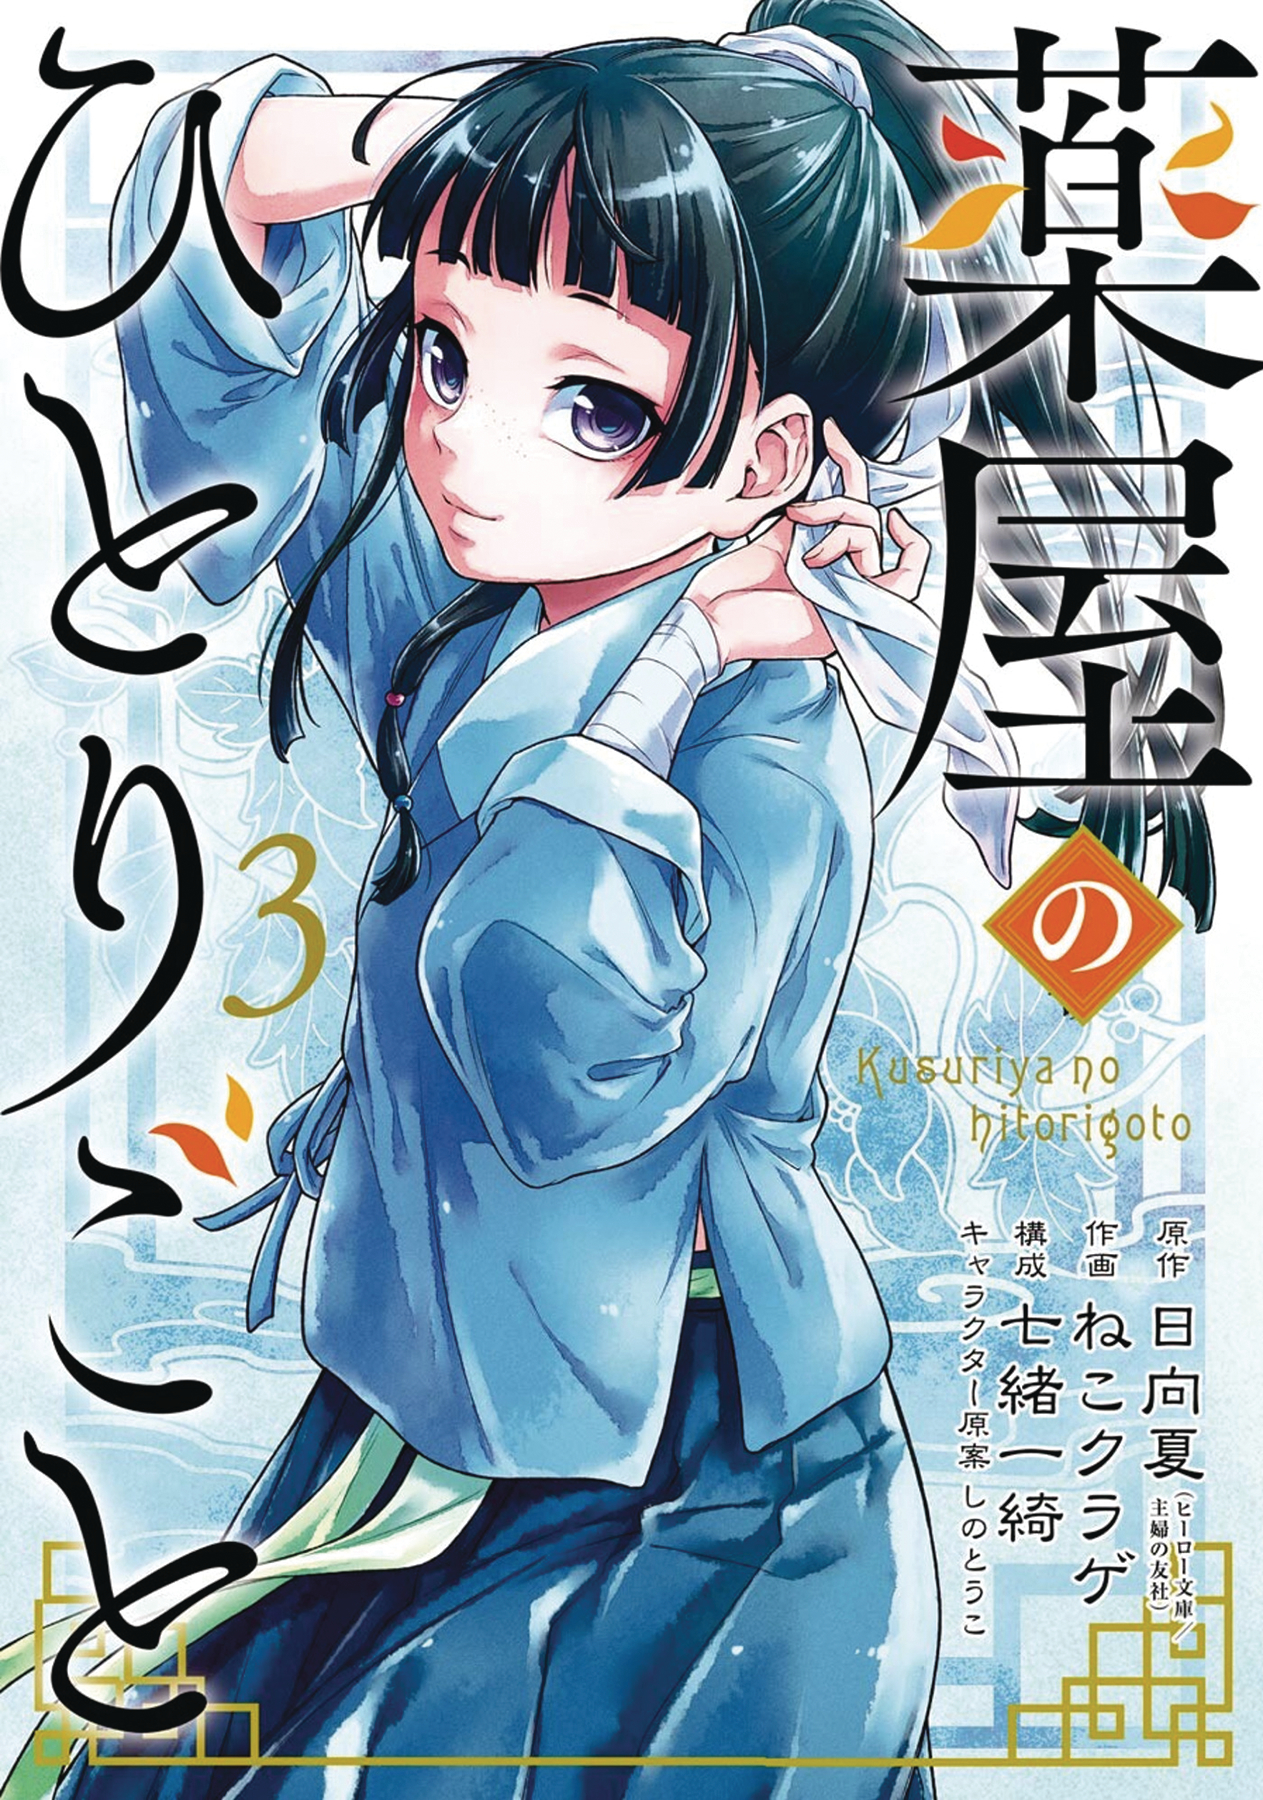 Apothecary Diaries Manga Volume 3